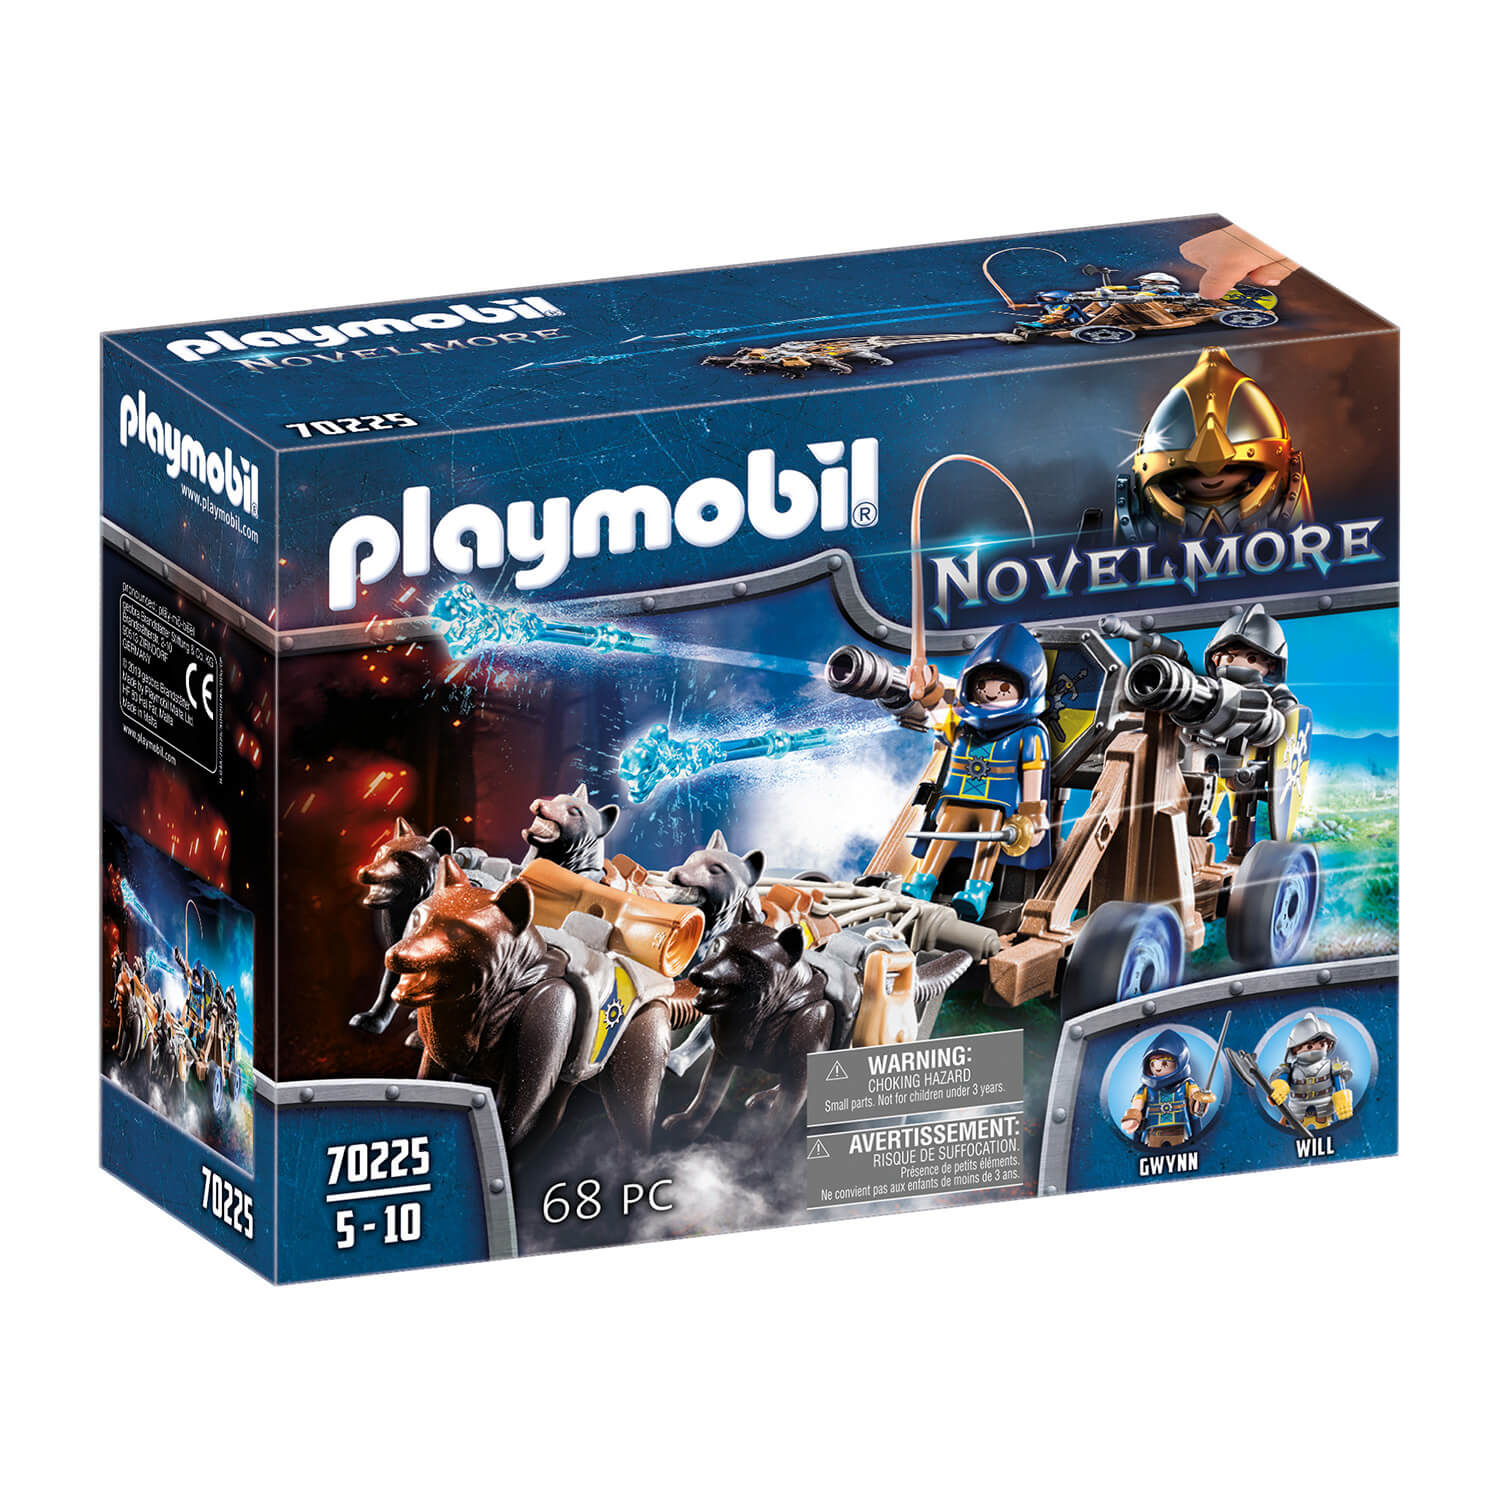 PLAYMOBIL Novelmore Novelmore Wolf Team (70225)